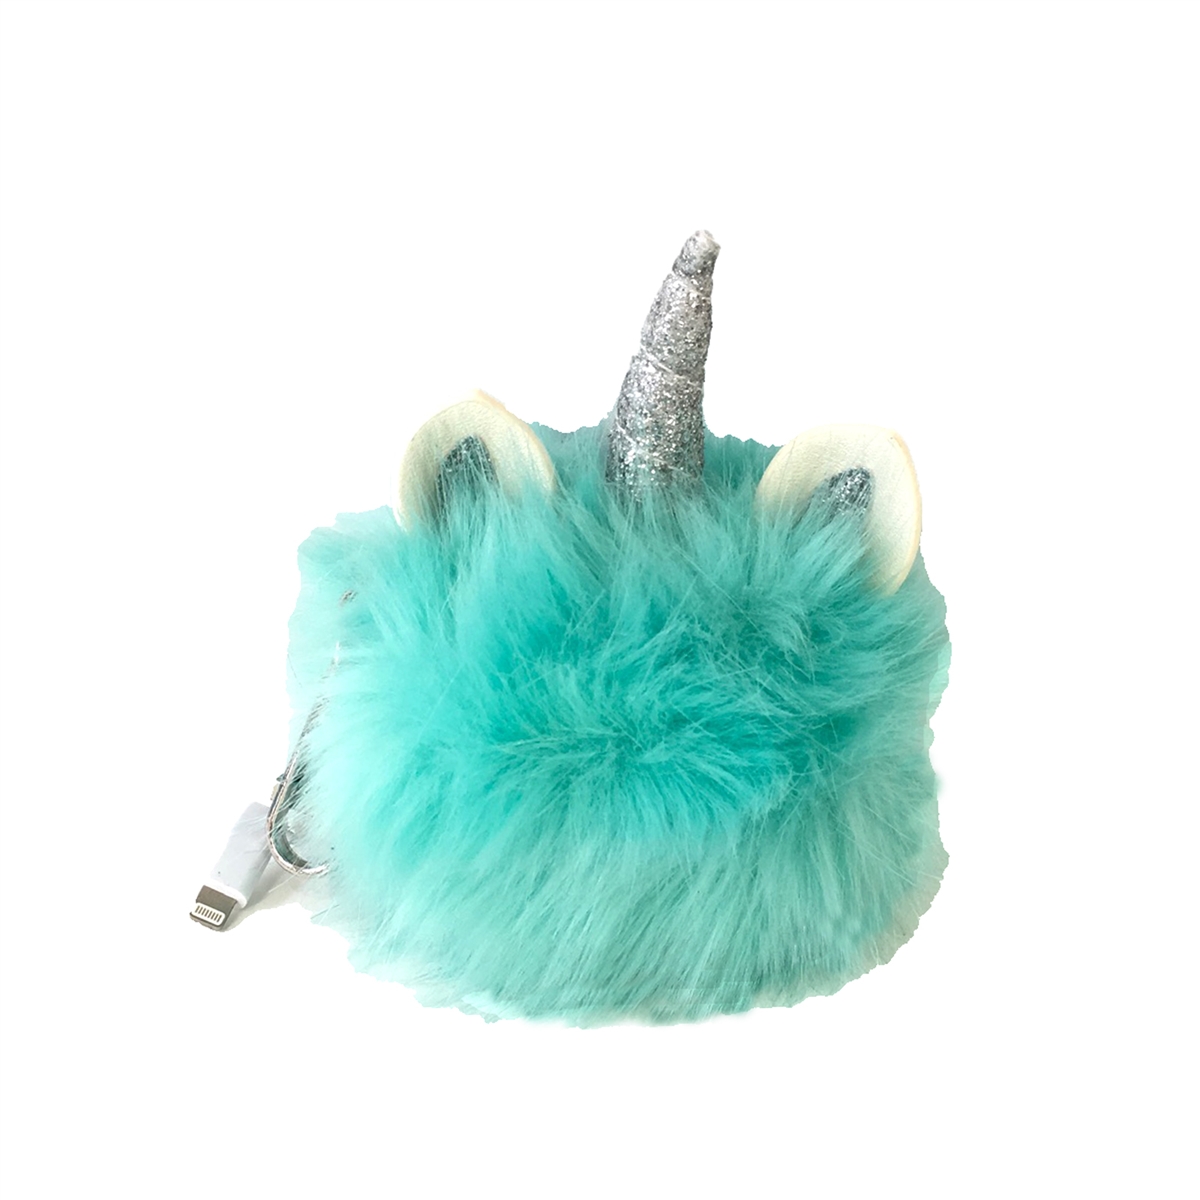 Fluffy Unicorn Pom Pom Charm Keychain